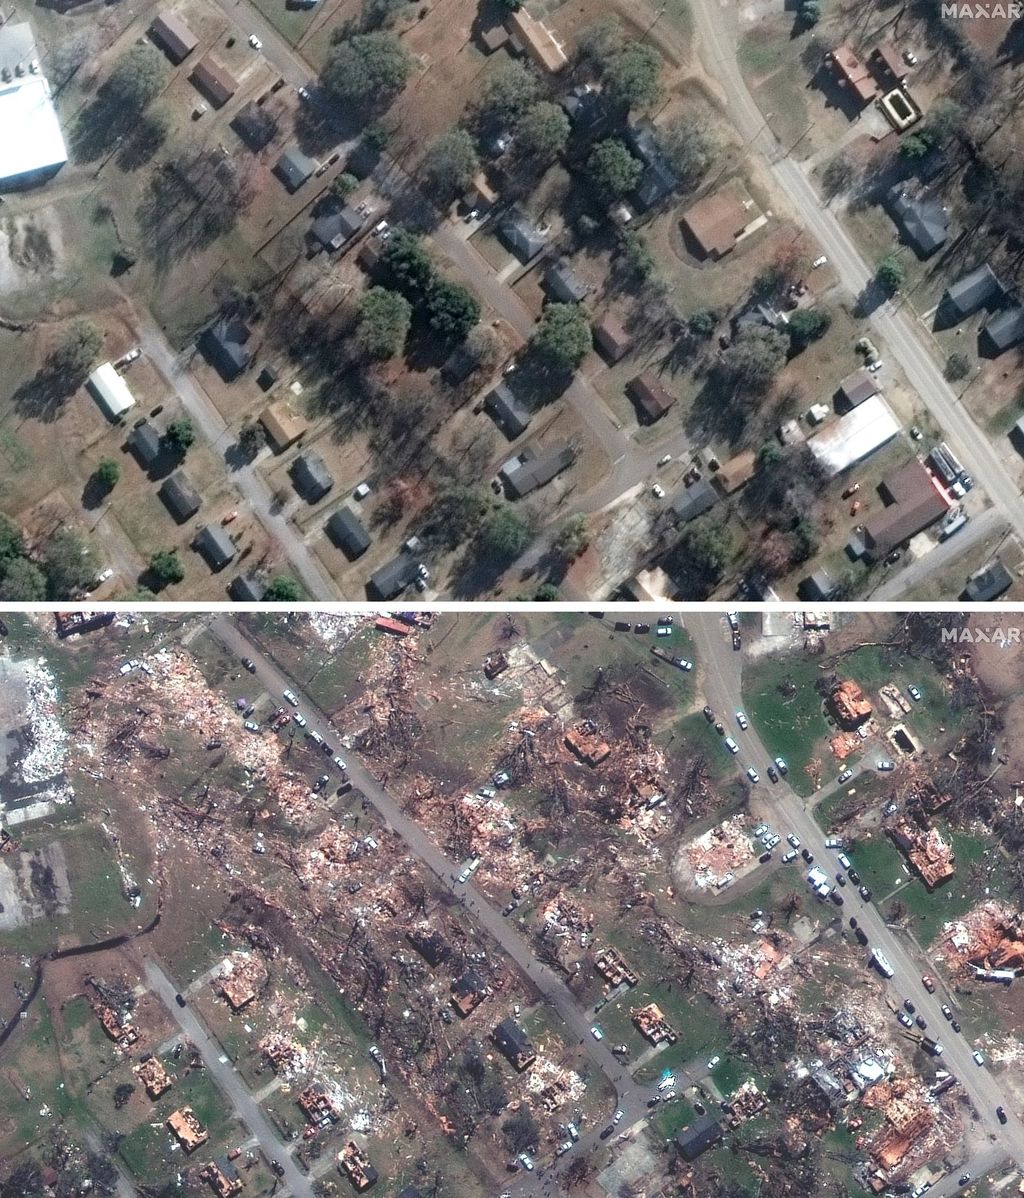 Destrucción en el condado de Rolling Fork, Mississippi